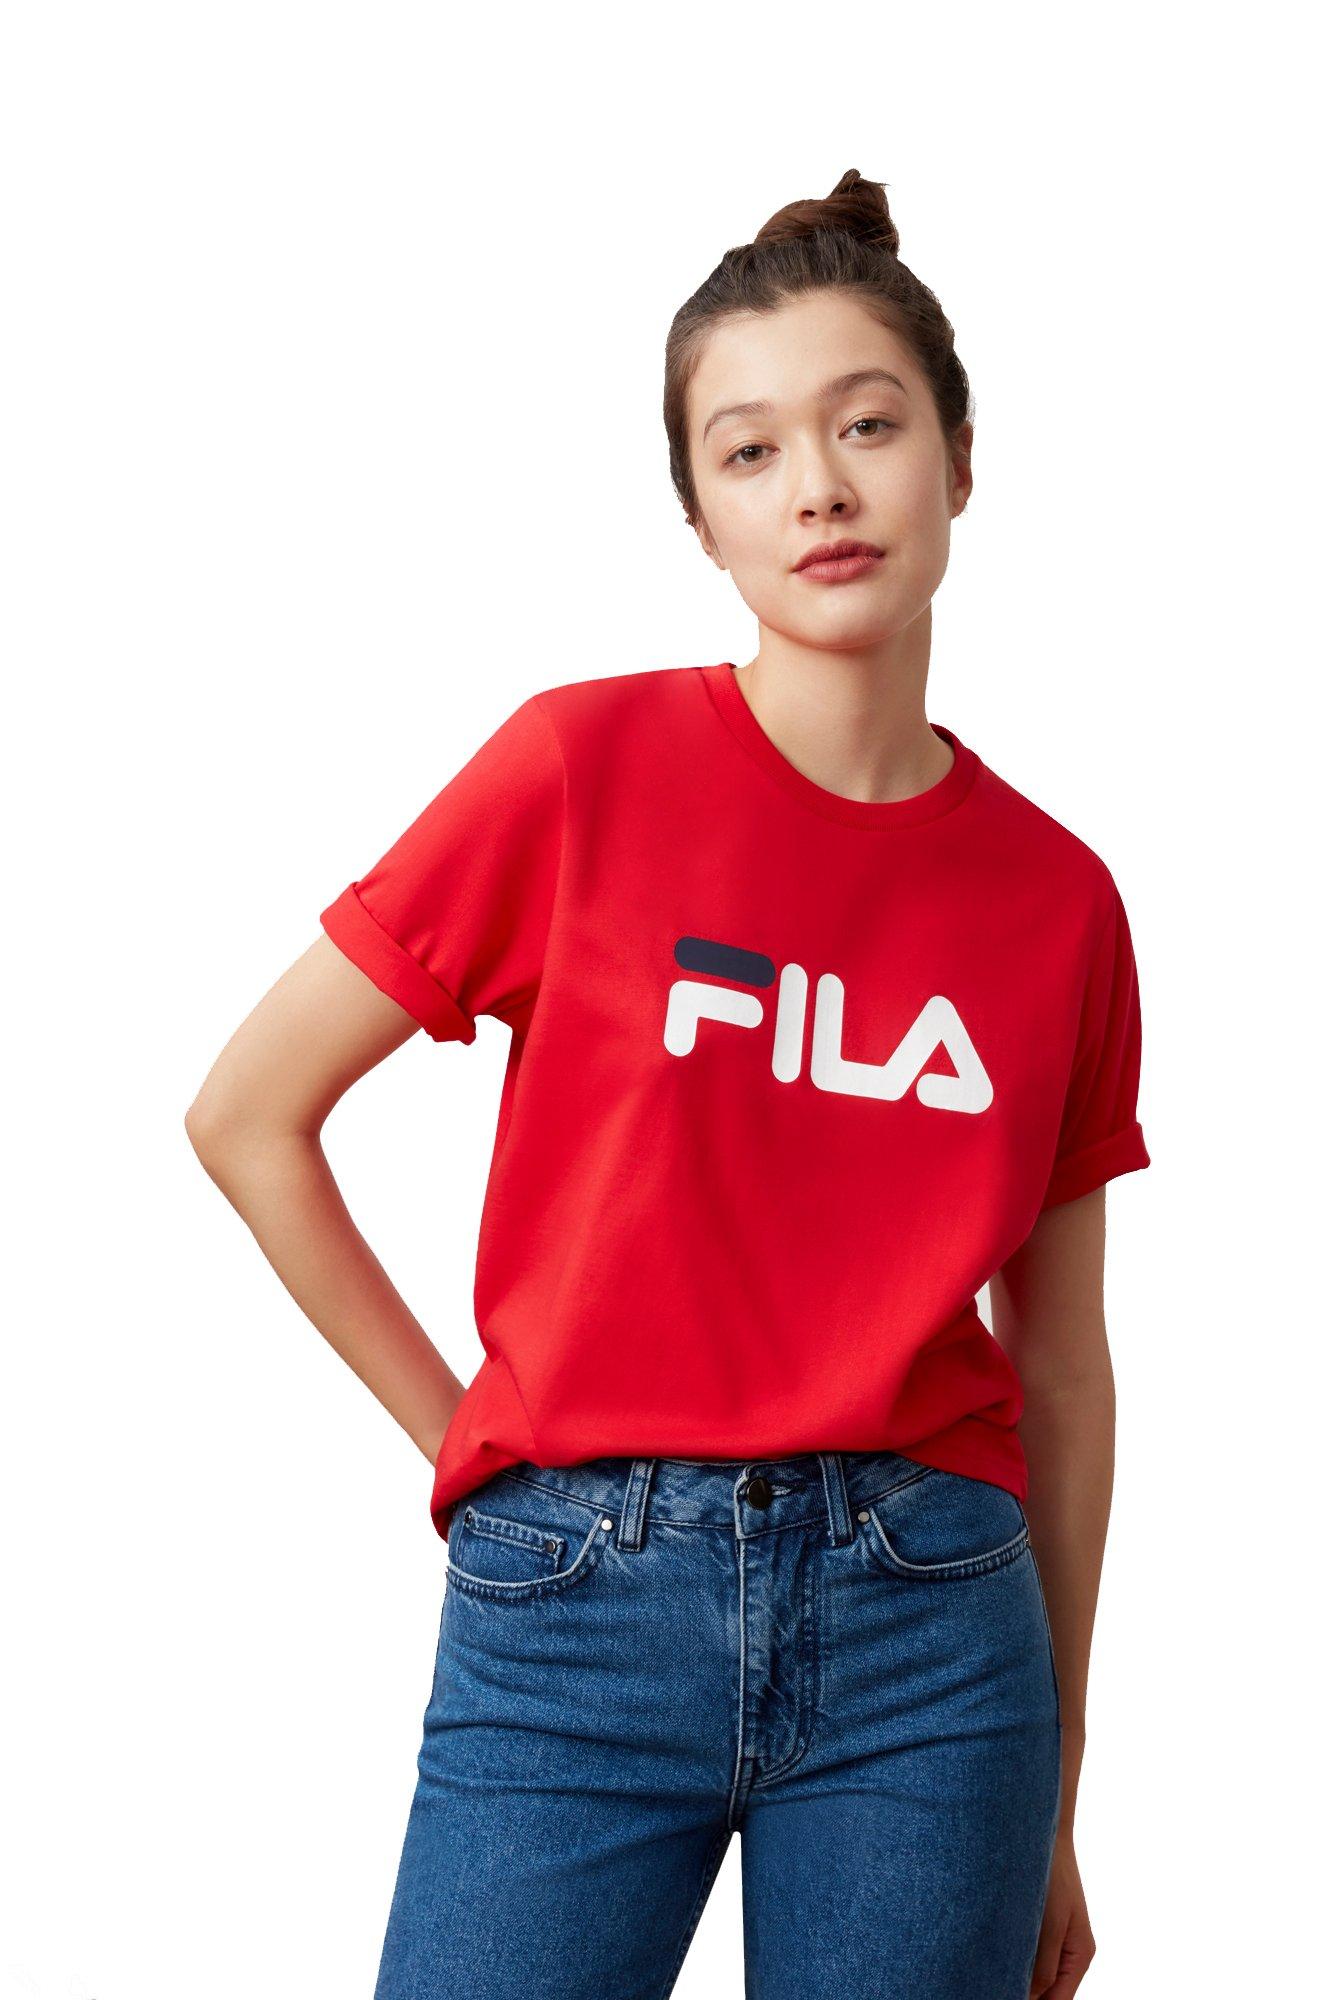 fila t shirt for ladies